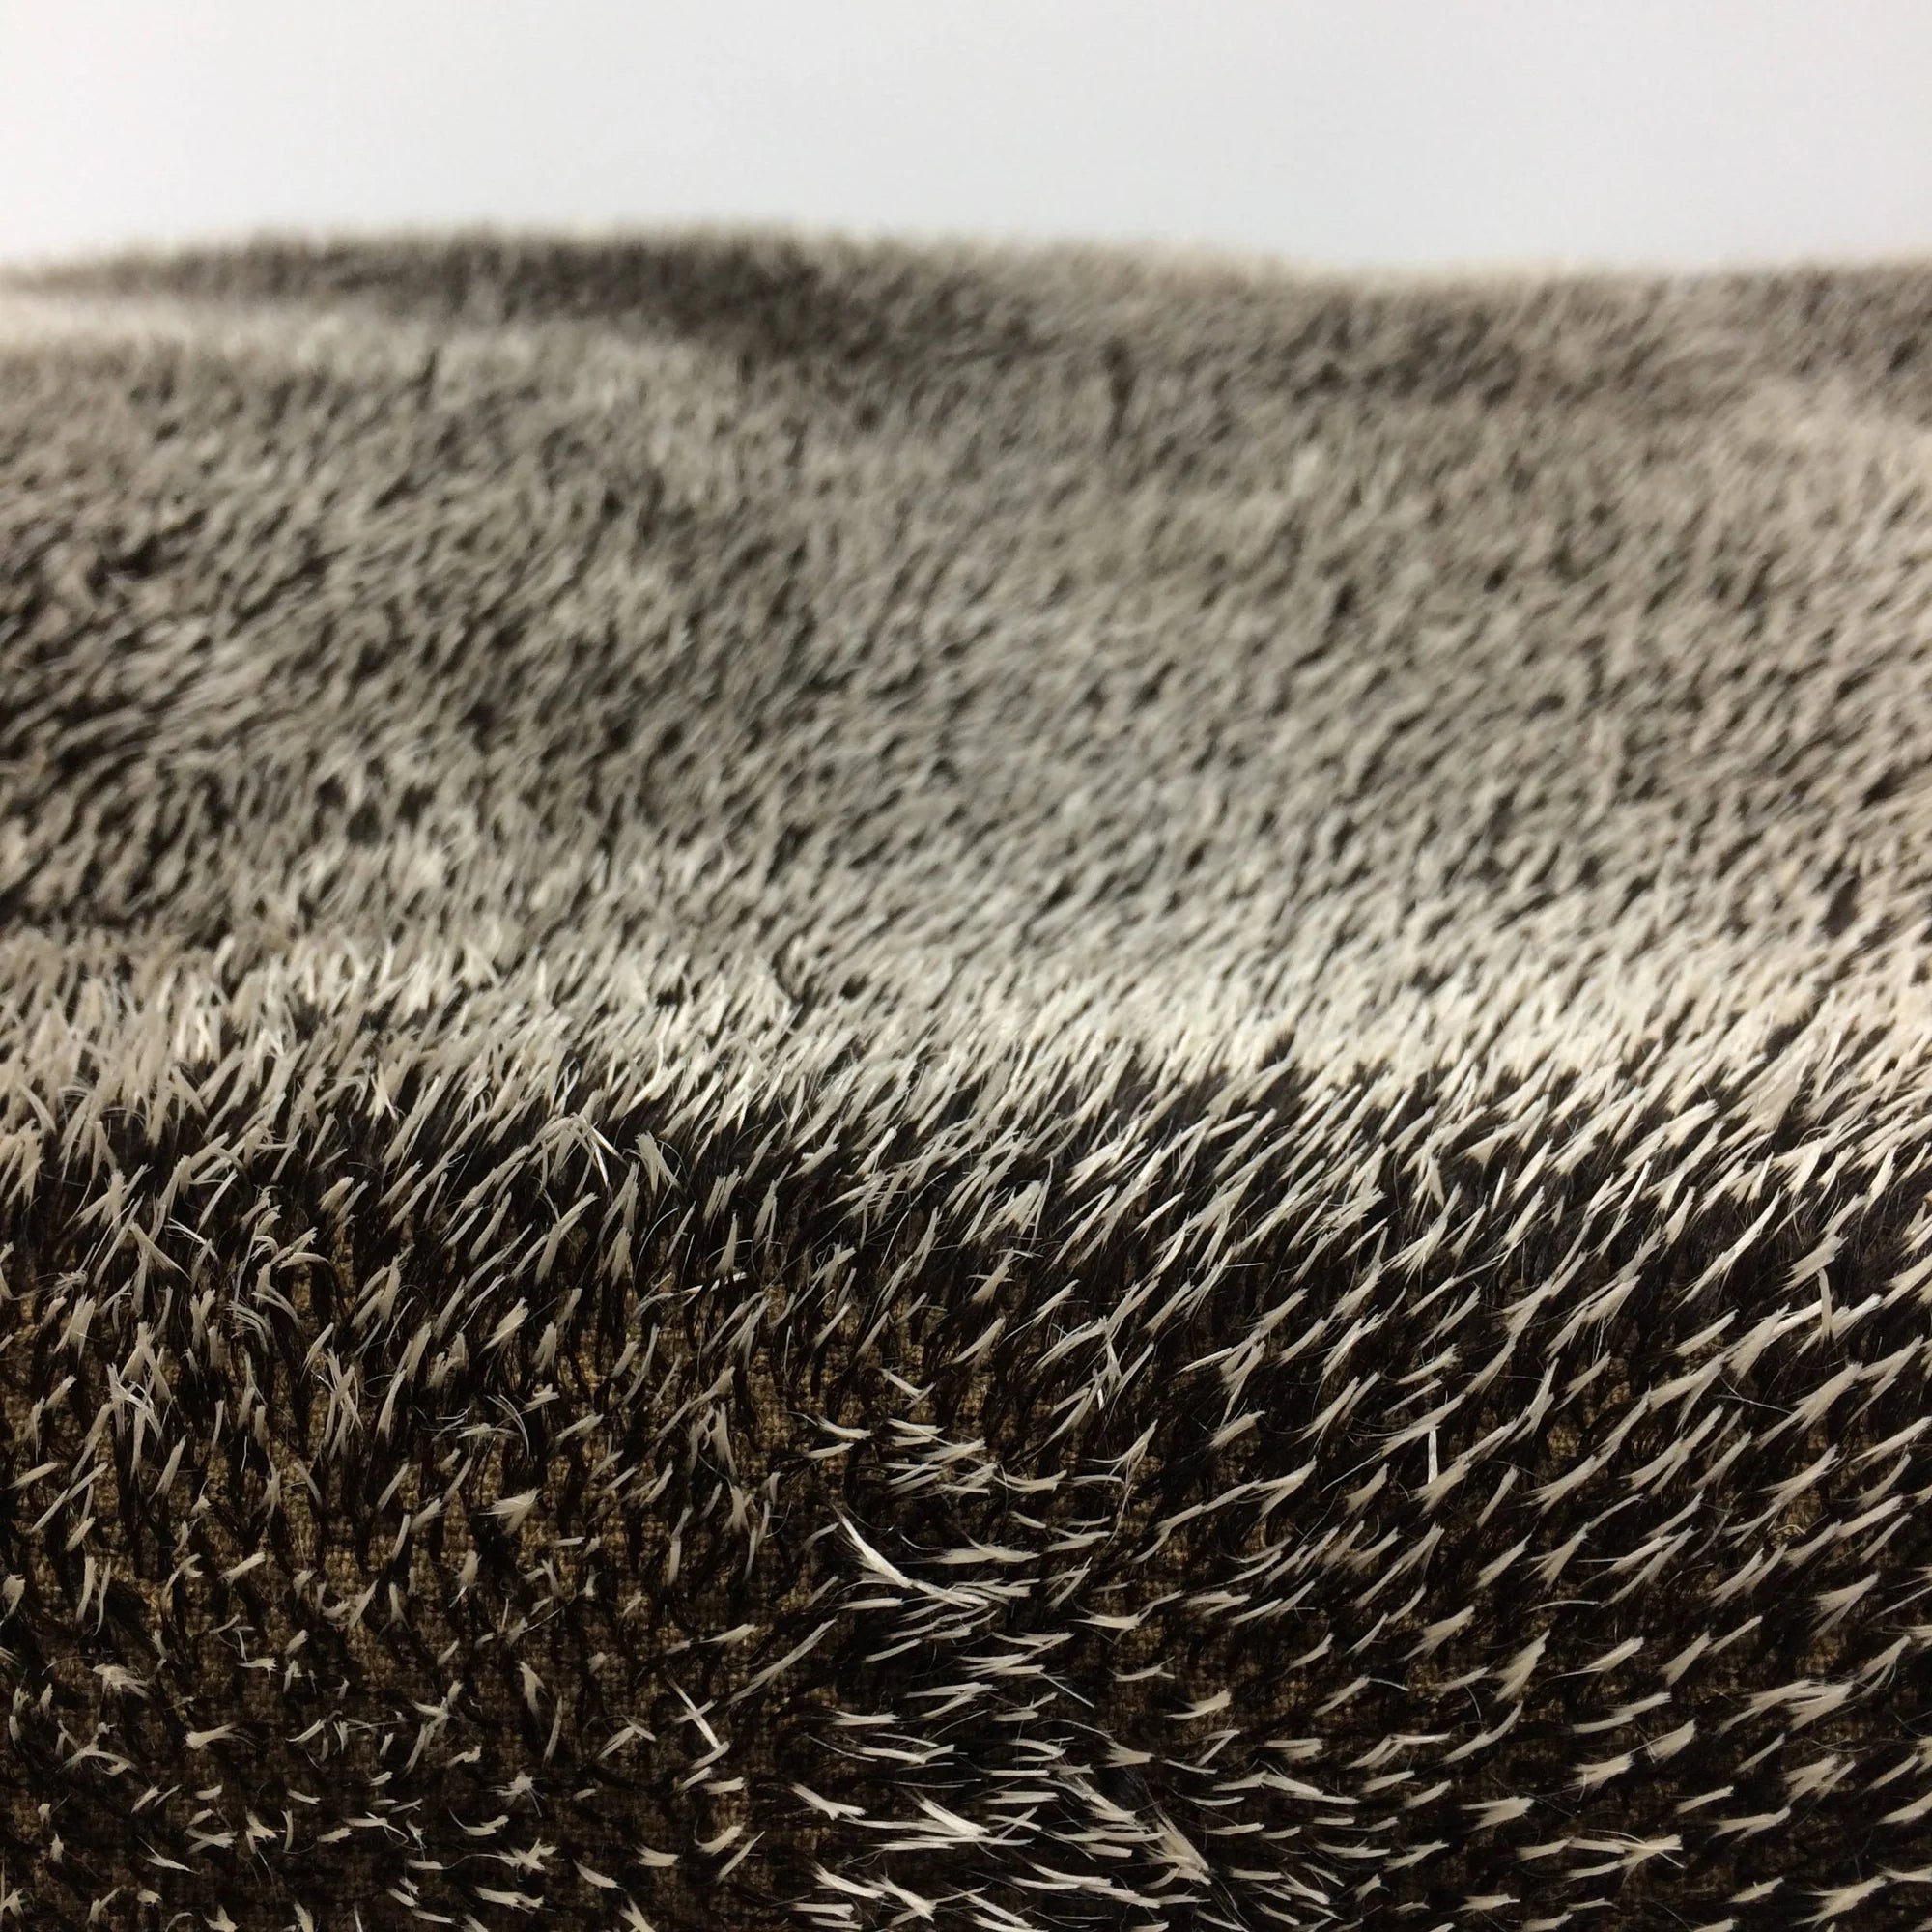 Hedgehog Mohair Fabric by Steiff 9-10mm spikes